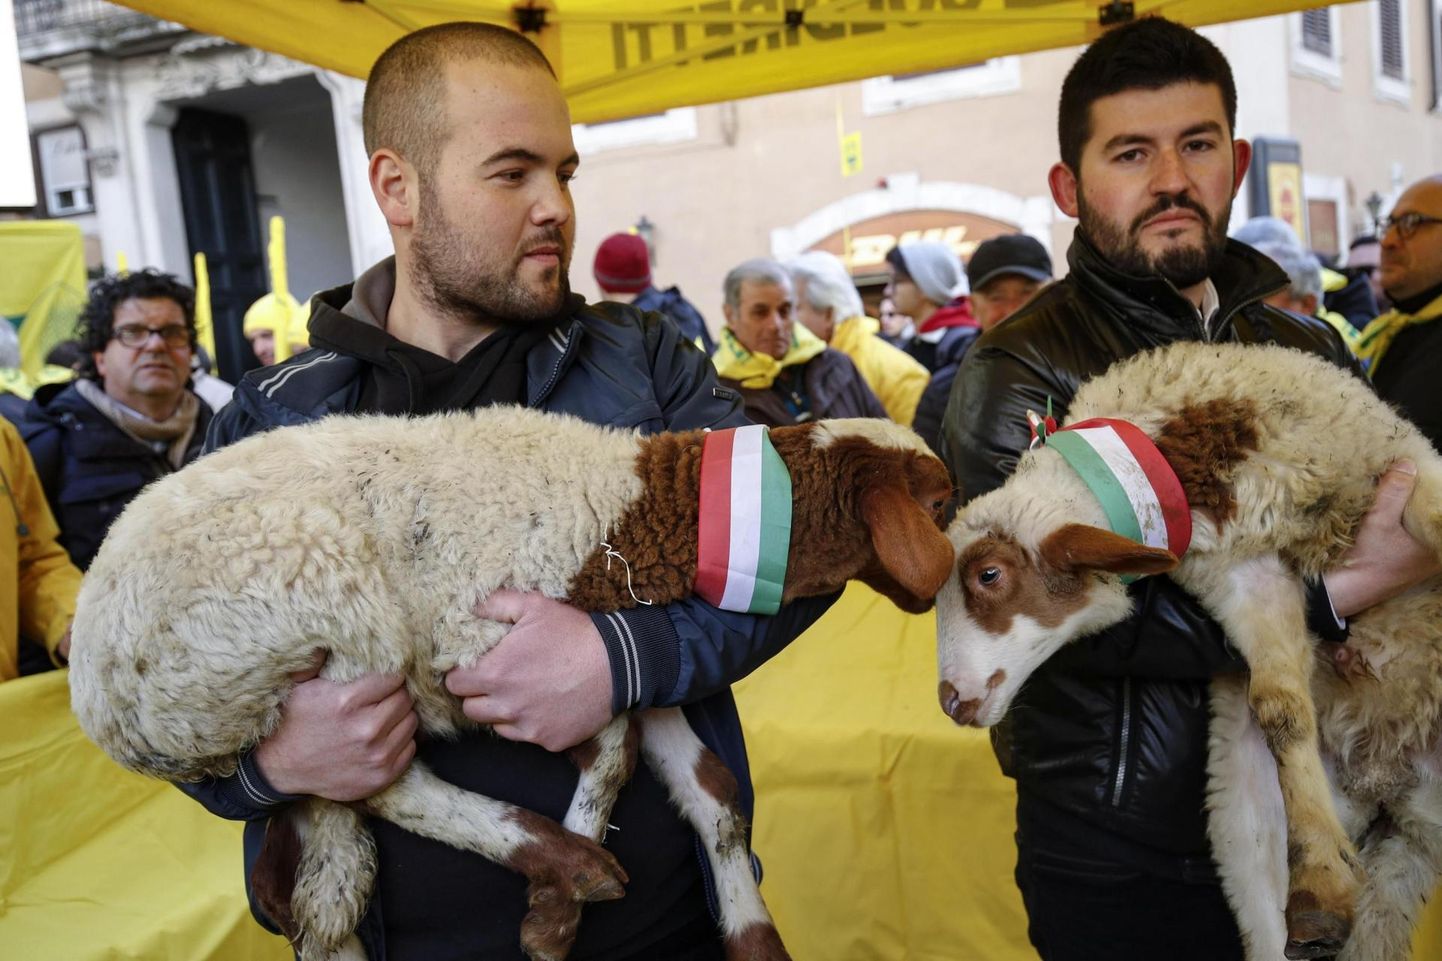 Ассоциация итальянских фермеров Coldiretti - активный борец за интересы отечественных фермеров. На организованном в феврале митинге они требовали ограничений на импорт баранины, а теперь организовали кампанию, дошедшую до Эстонии.